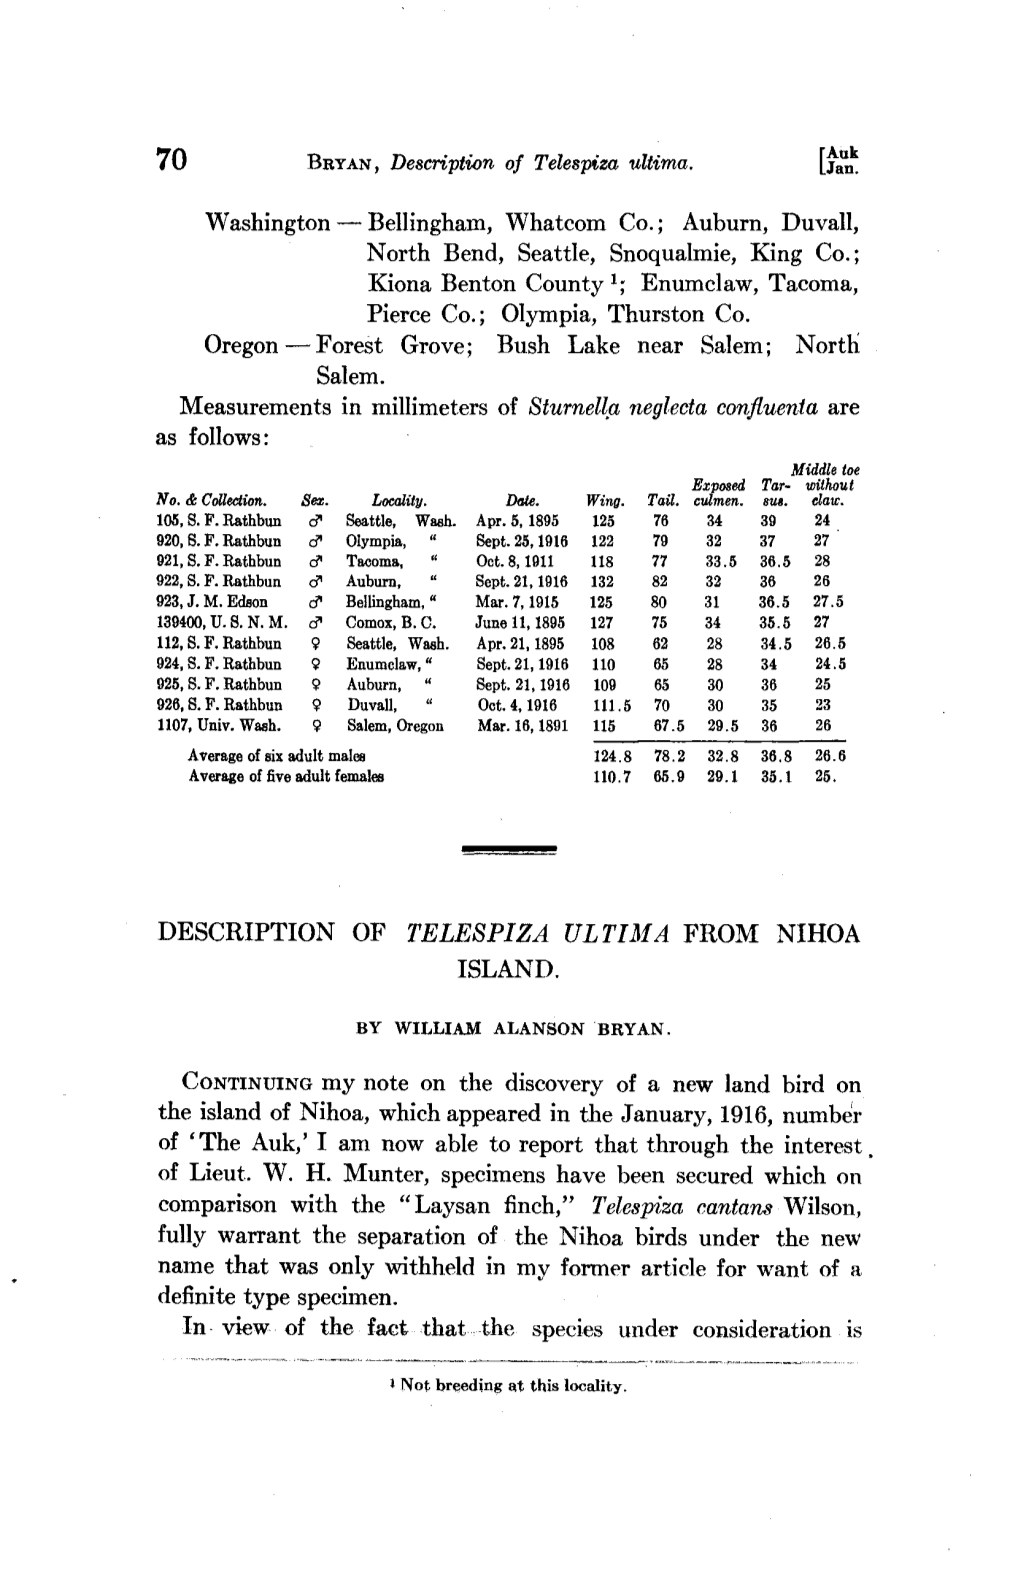 Description of Telespiza Ultima from Nihoa Island